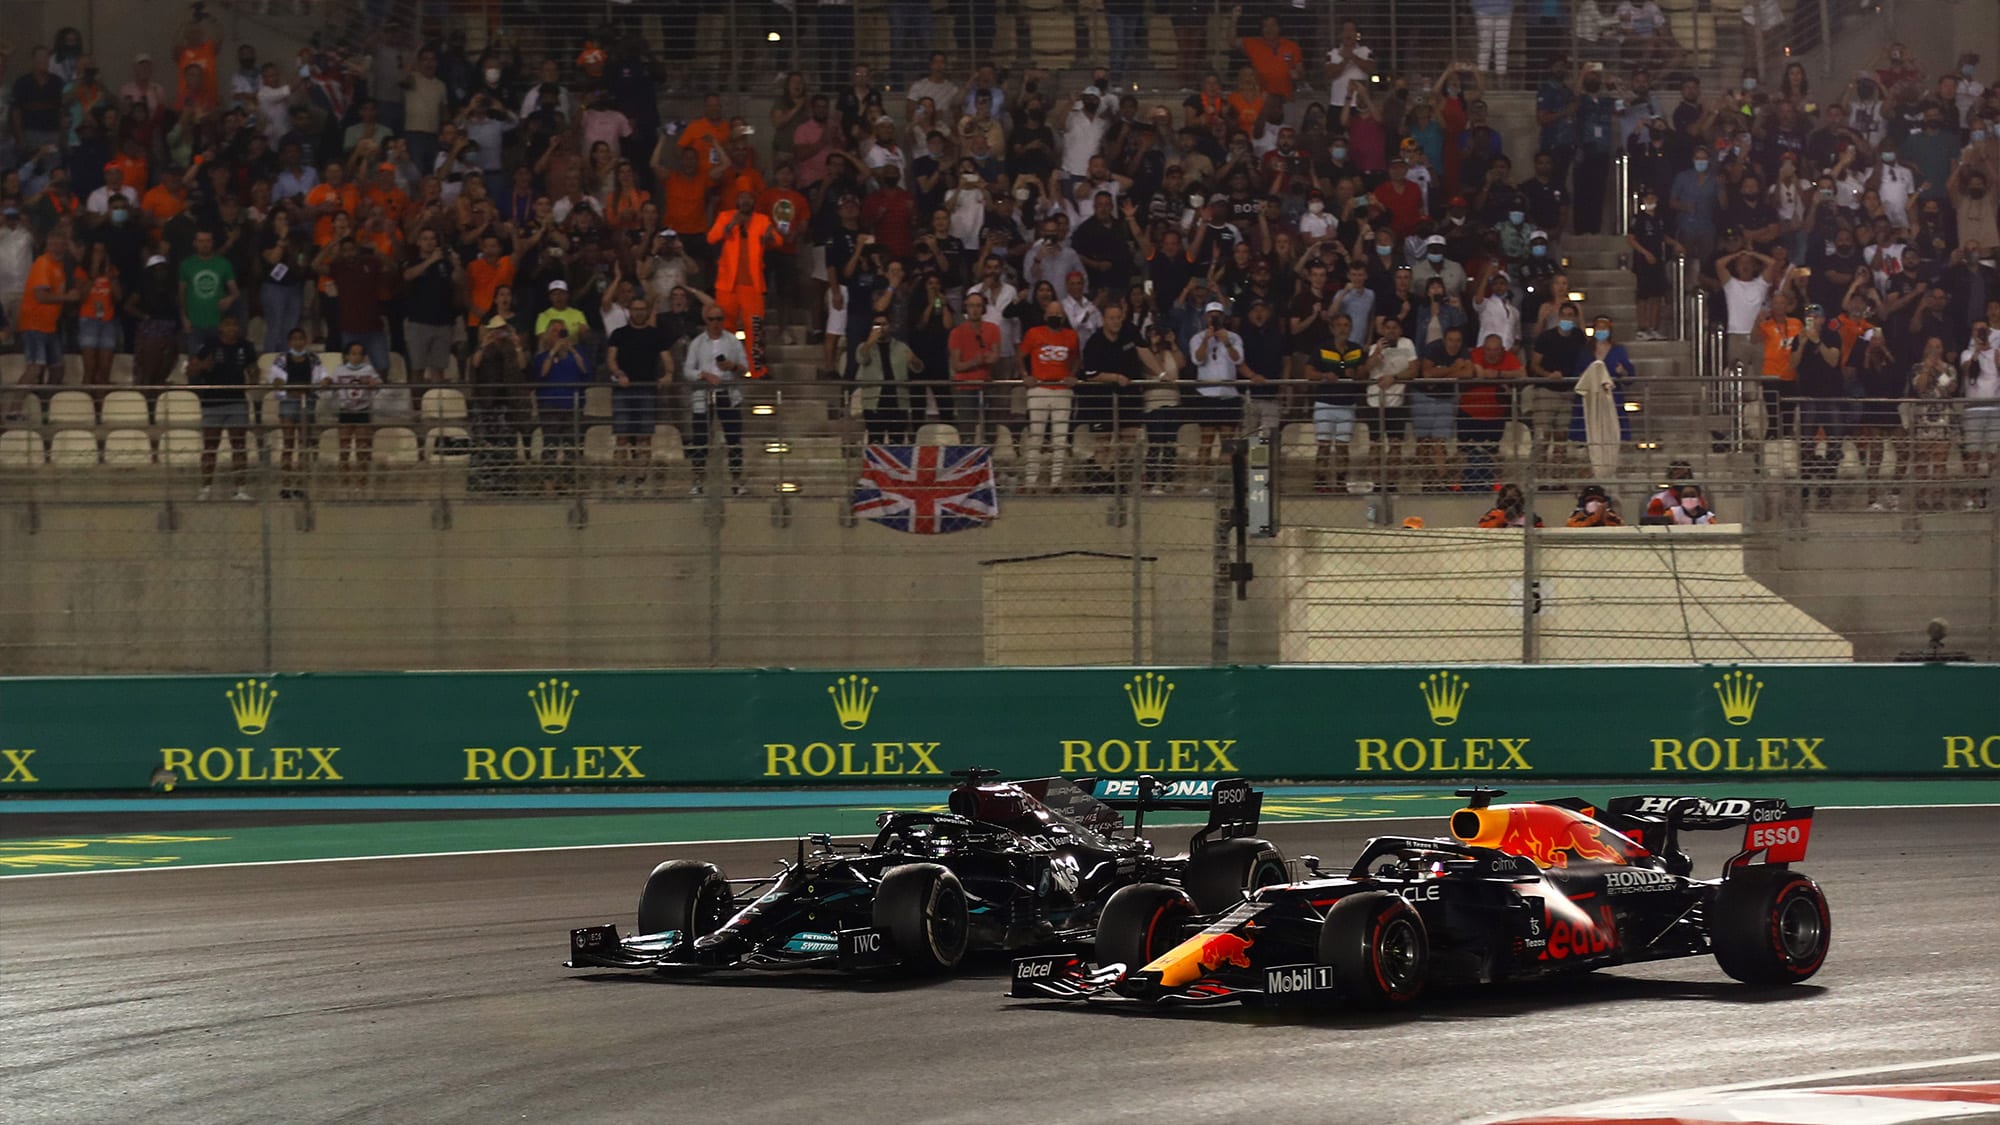 Uproar as Verstappen wins F1 title on final lap: 2021 Abu Dhabi GP report -  Motor Sport Magazine